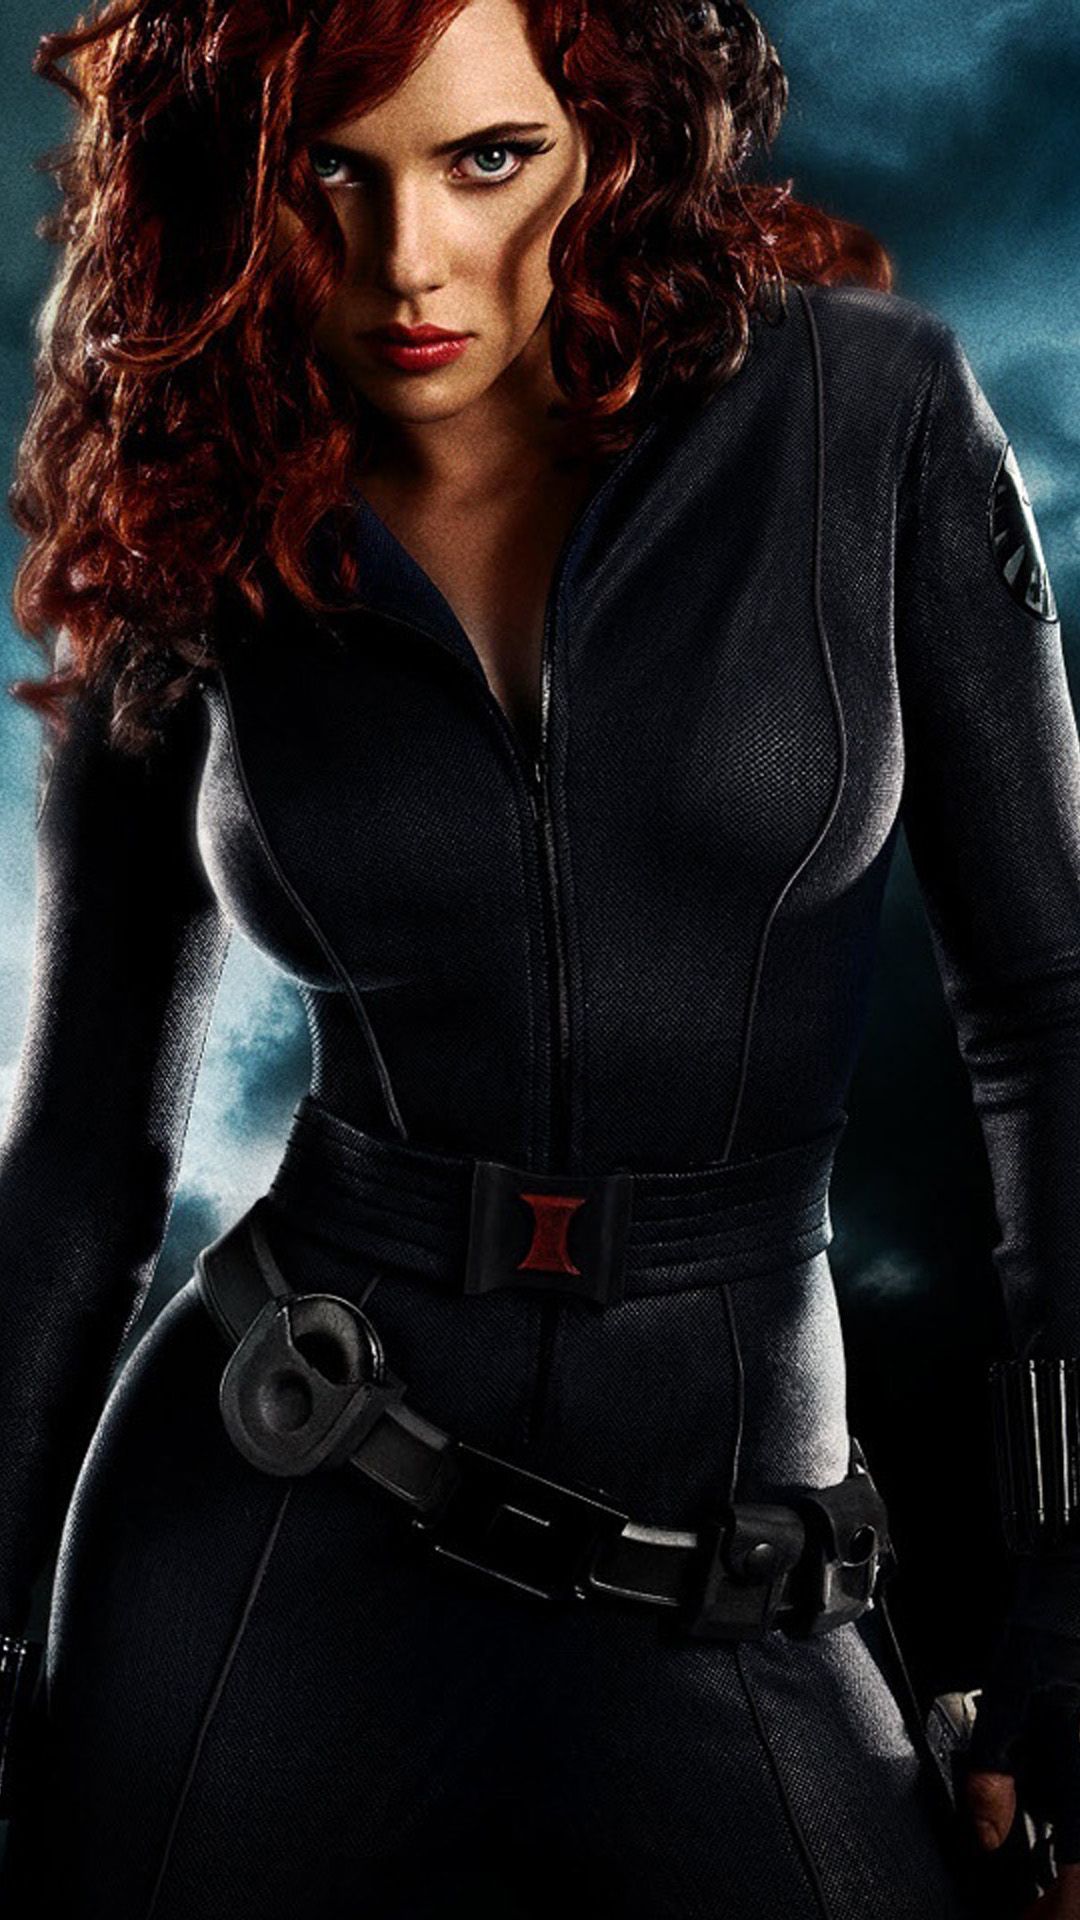 Avengers. Black widow avengers, Black widow